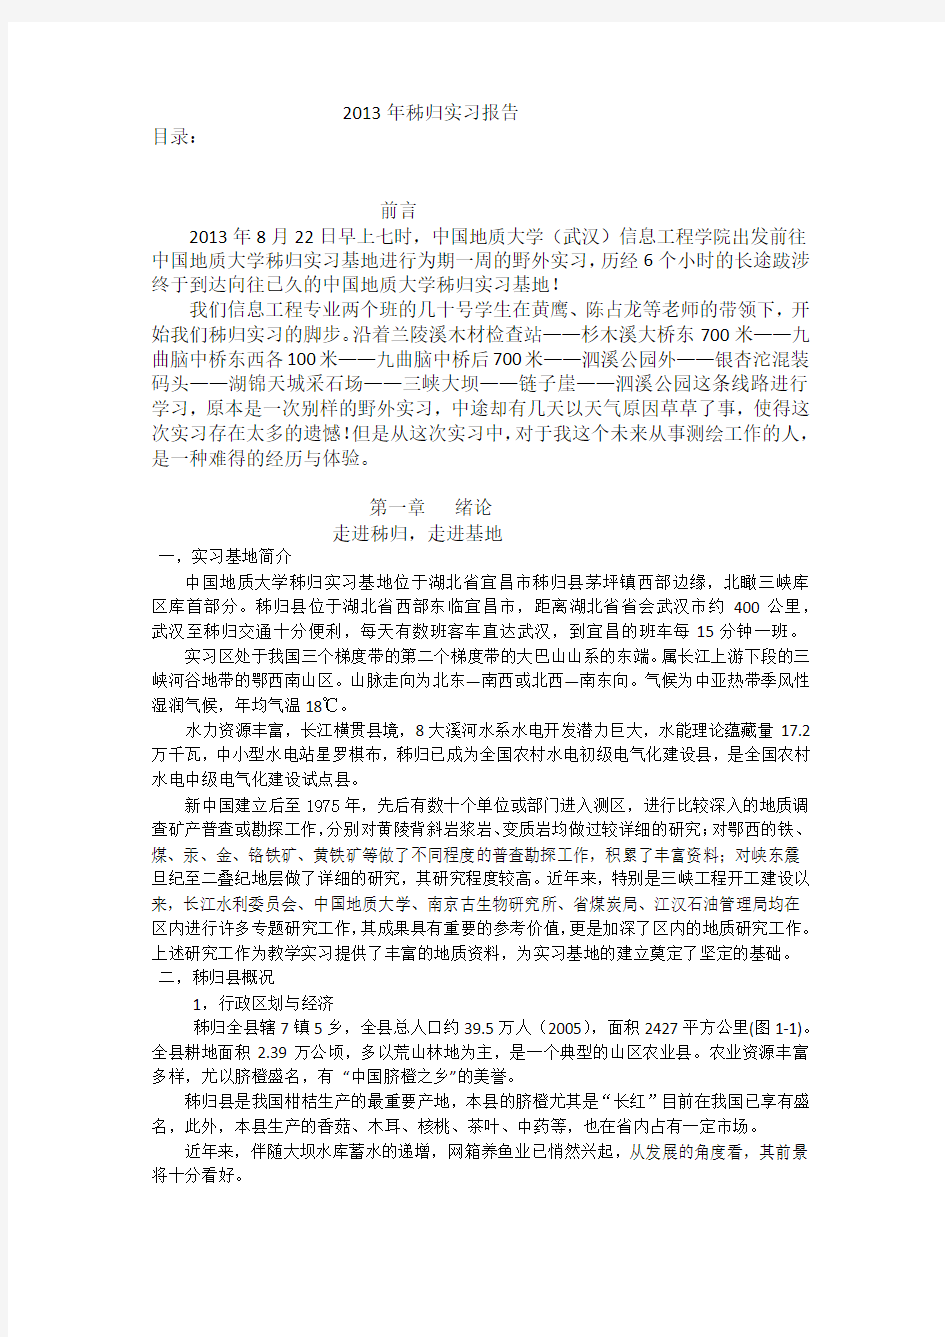 中国地质大学(武汉)2013年秭归实习报告